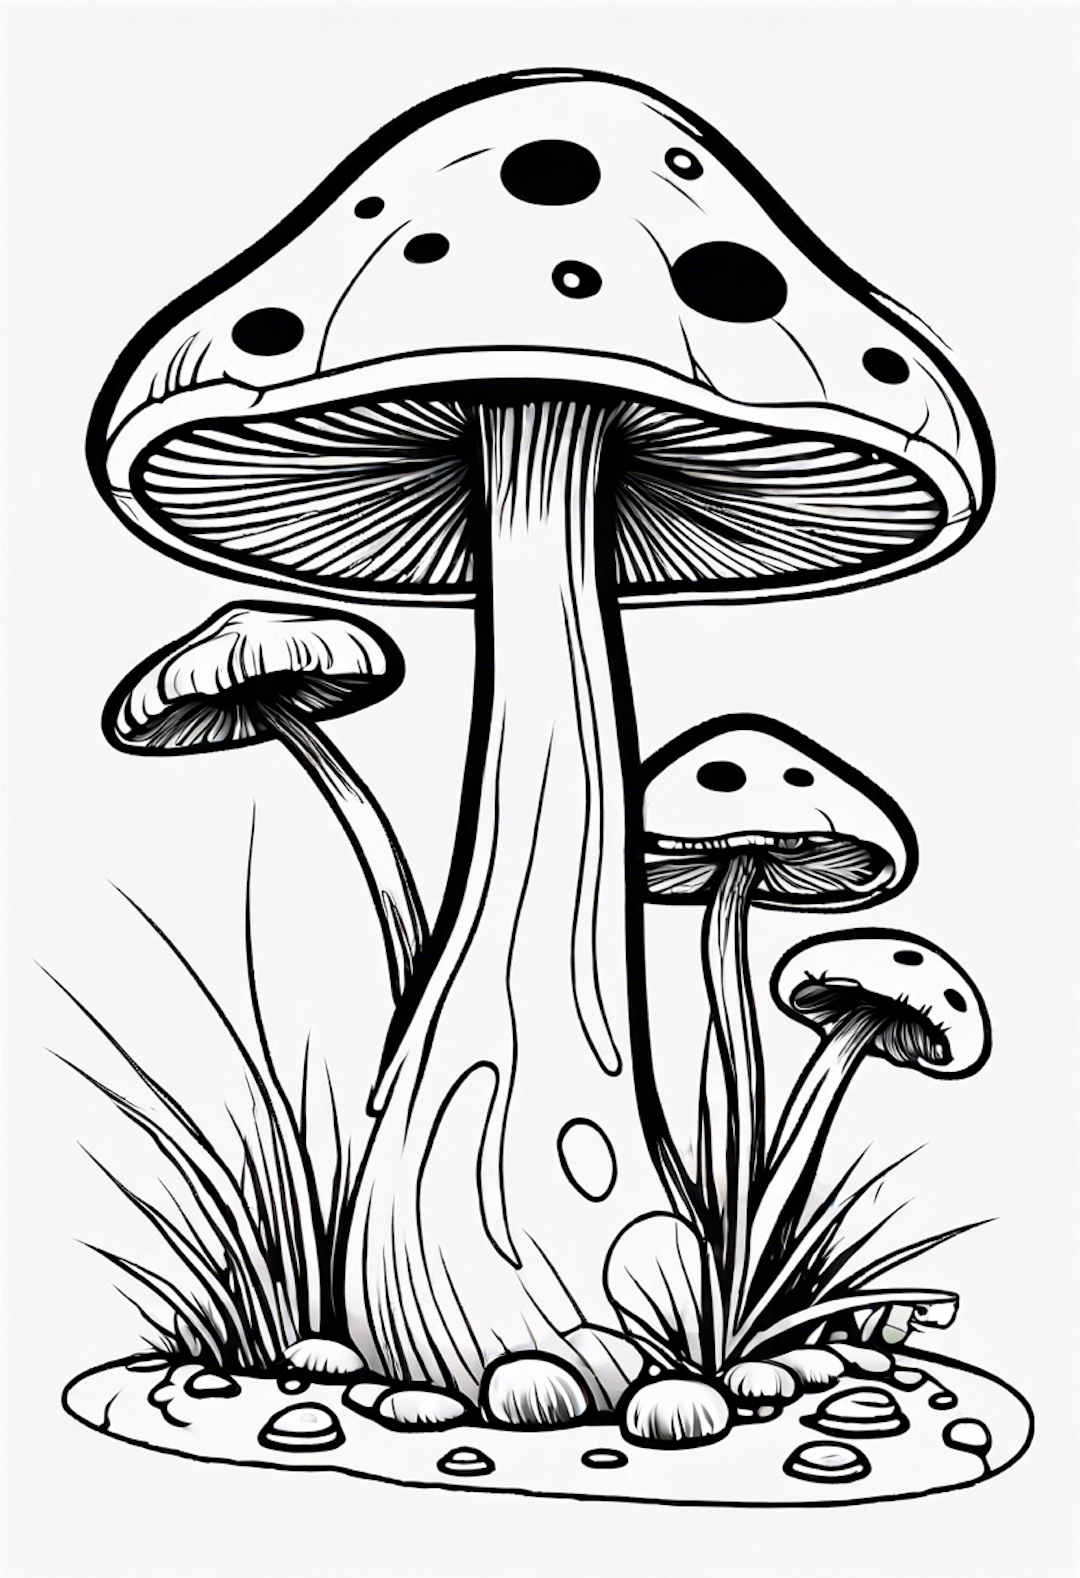 A Cartoon Mushroom Painting